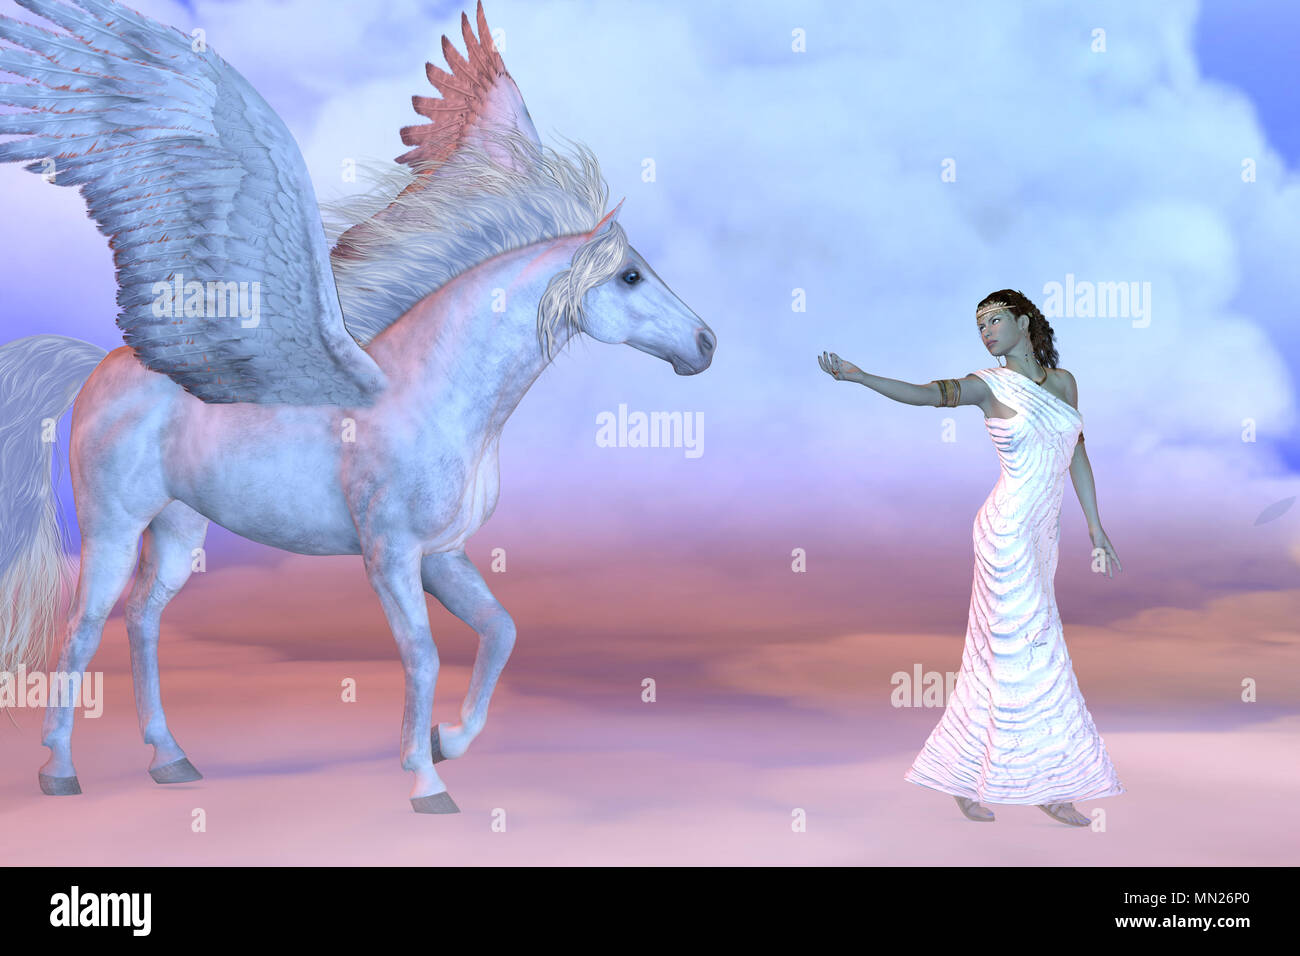 Athena griechische Göttin und Pegasus - Athena, Tochter des griechischen Gottes Zeus, lädt zu der mythischen Pegasus hoch oben in den Wolkenschichten. Stockfoto